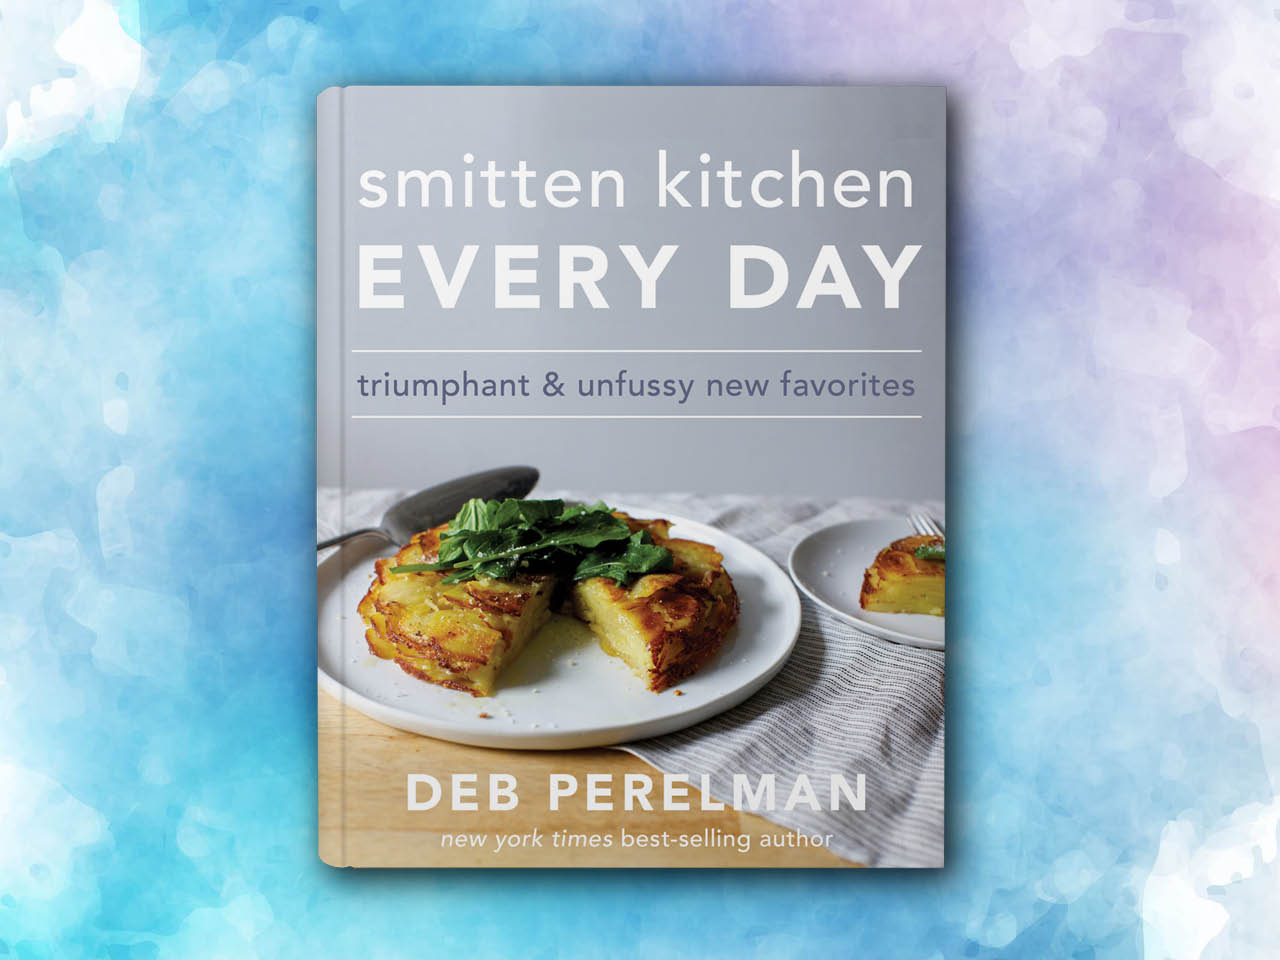 Smitten Kitchen cookbook: Every Day